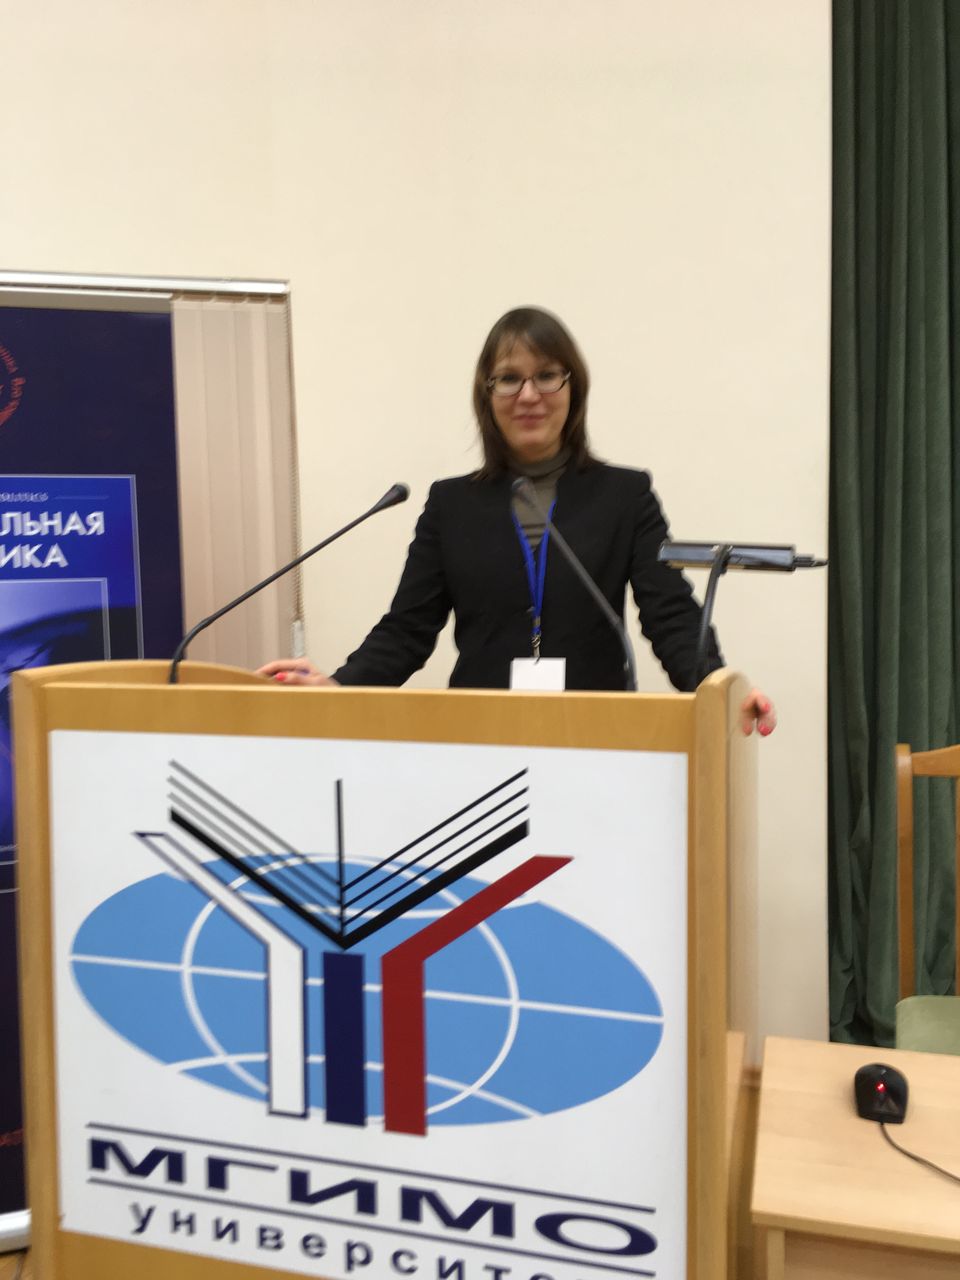 Руководитель отдела дополнительного образования выступила на форуме "25 лет внешней политики России"